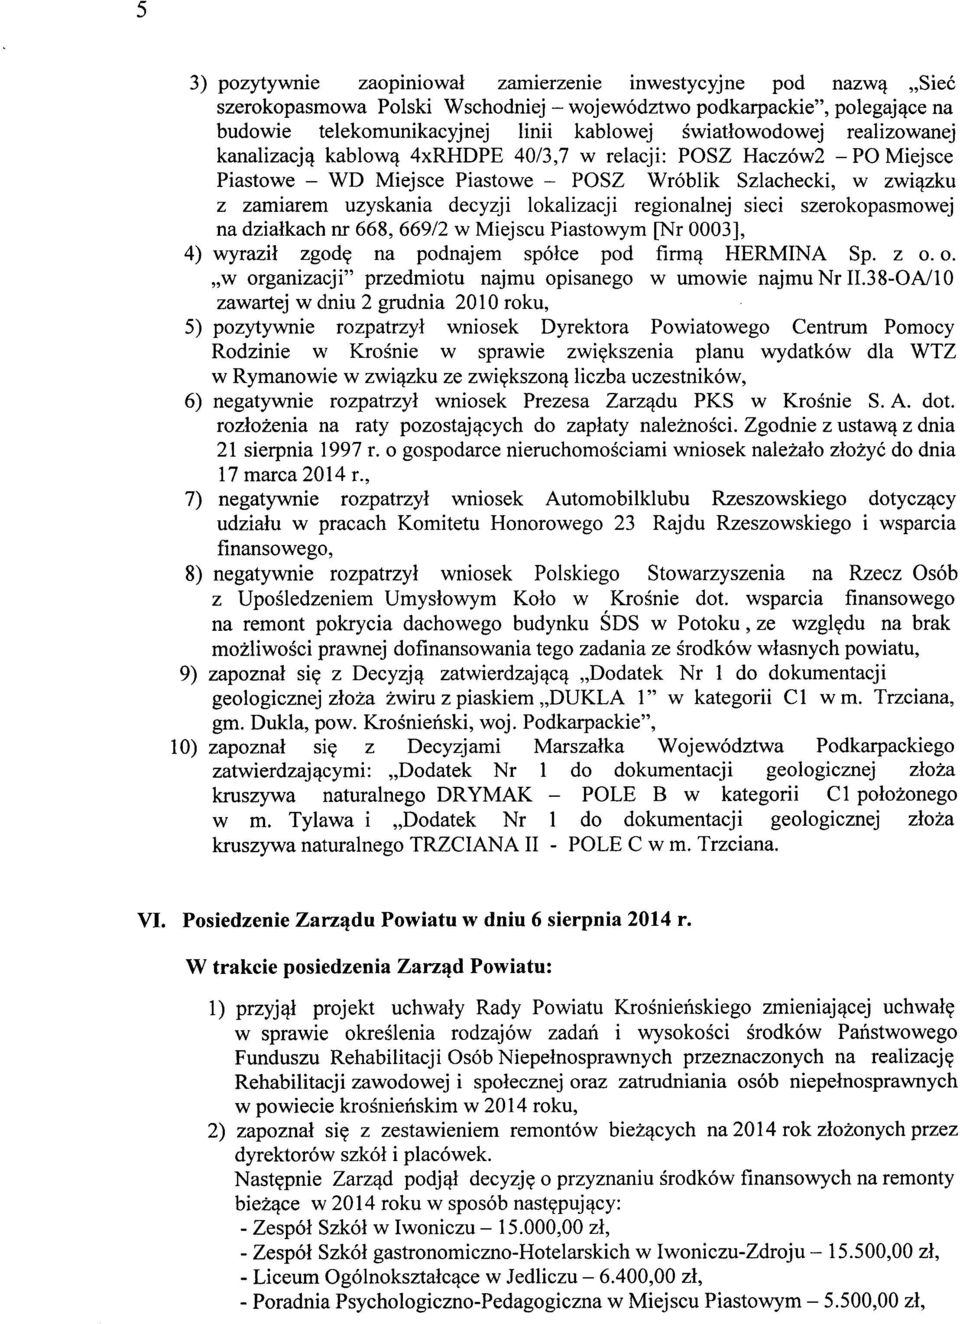 lokalizacji regionalnej sieci szerokopasmowej na działkach nr 668, 66912 w Miejscu Piastowym [Nr 0003], 4) wyraził zgodę na podnajem spółce pod firmą HERMINA Sp. z o.